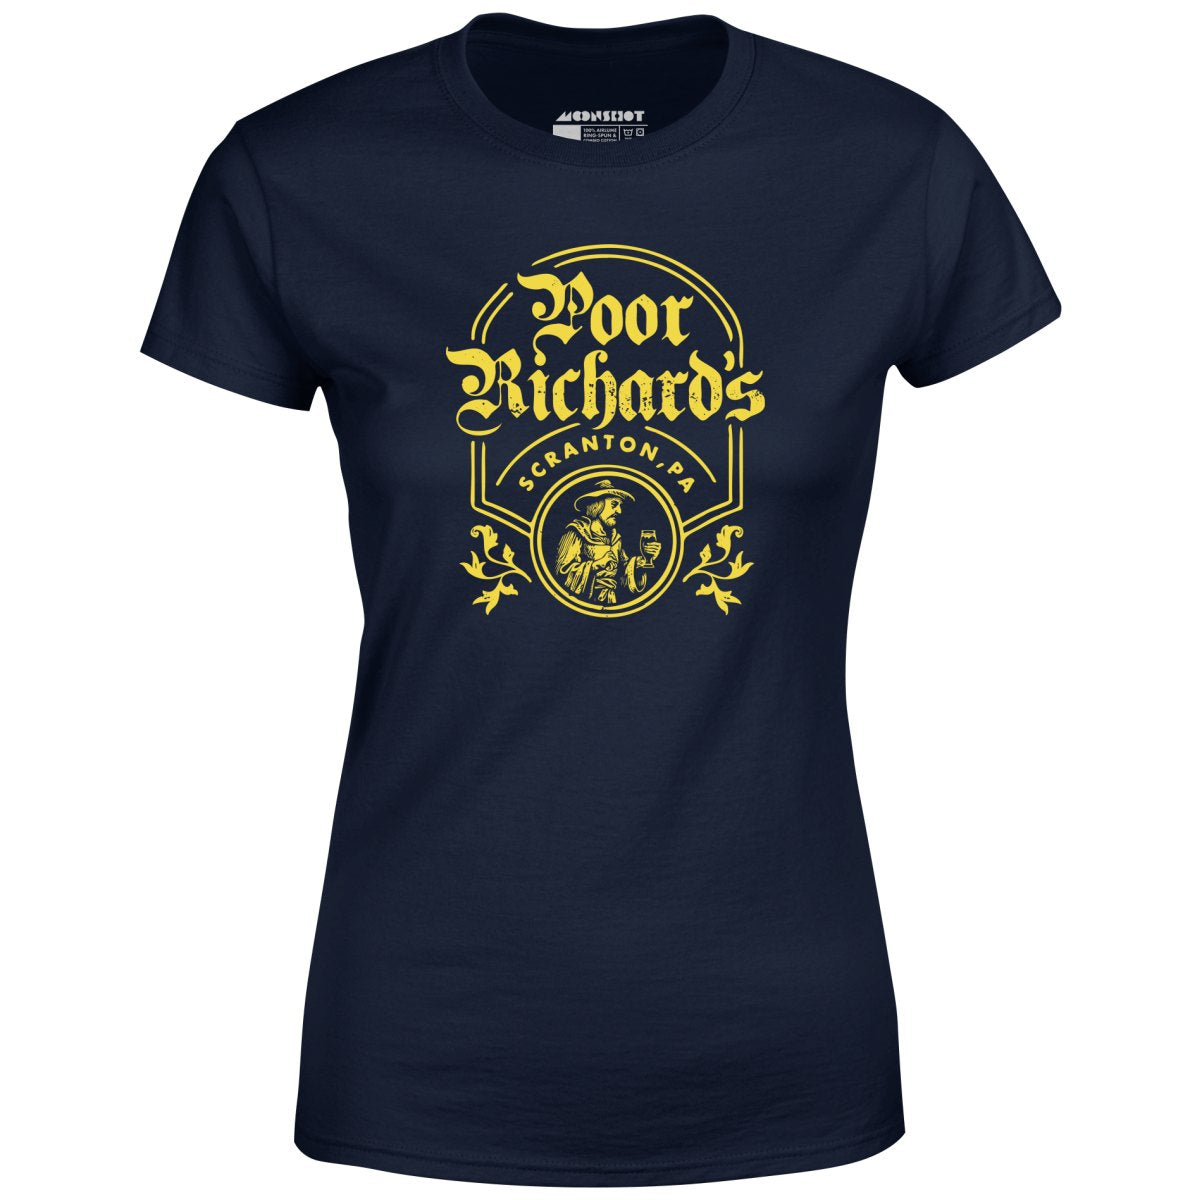 Poor Richard's - Women's T-Shirt